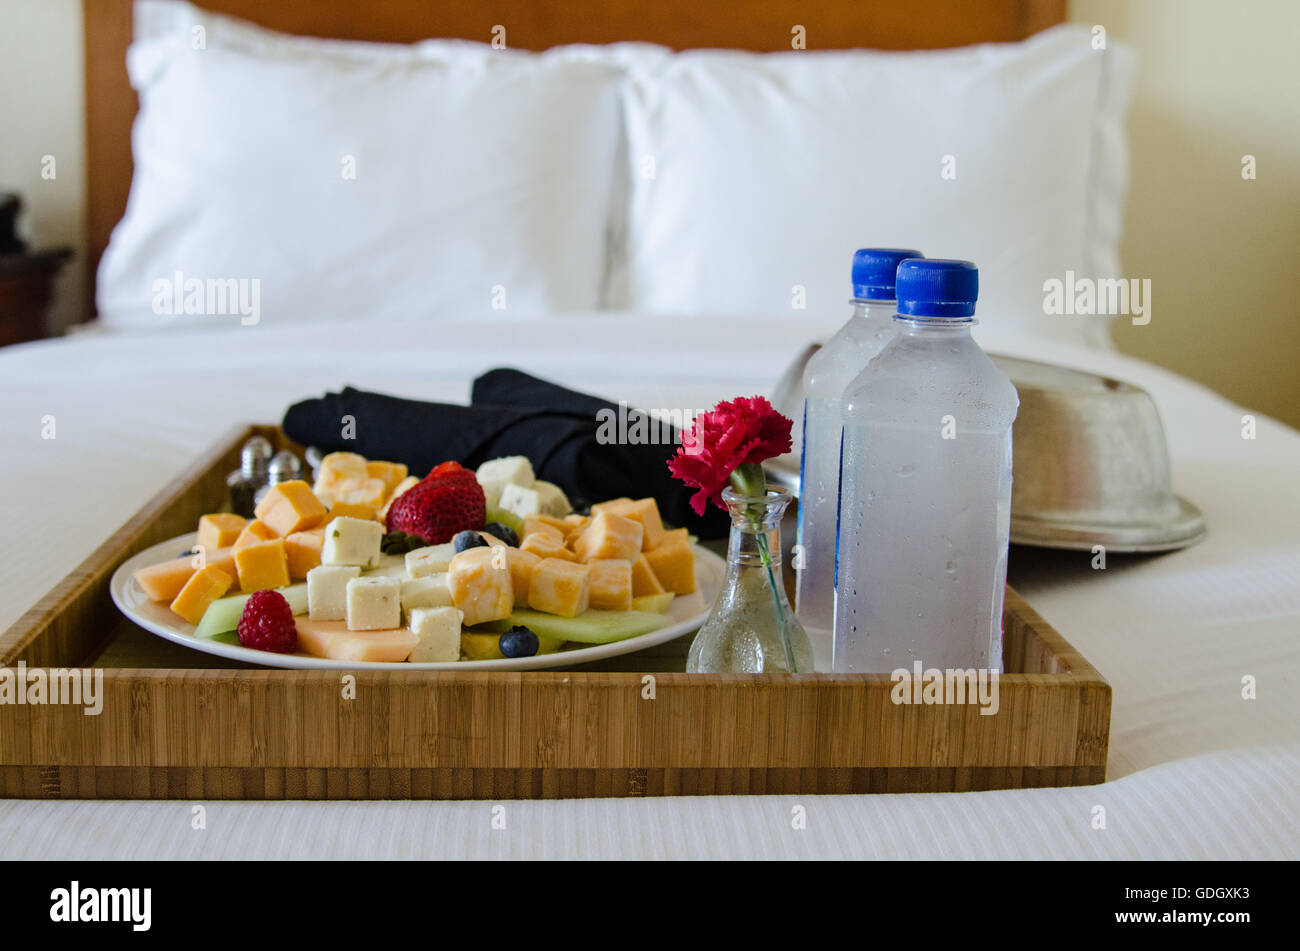 Servizio in camera Servizio vassoio sul letto in camera in hotel con frutta e formaggio con acqua e fiori in vaso Foto Stock